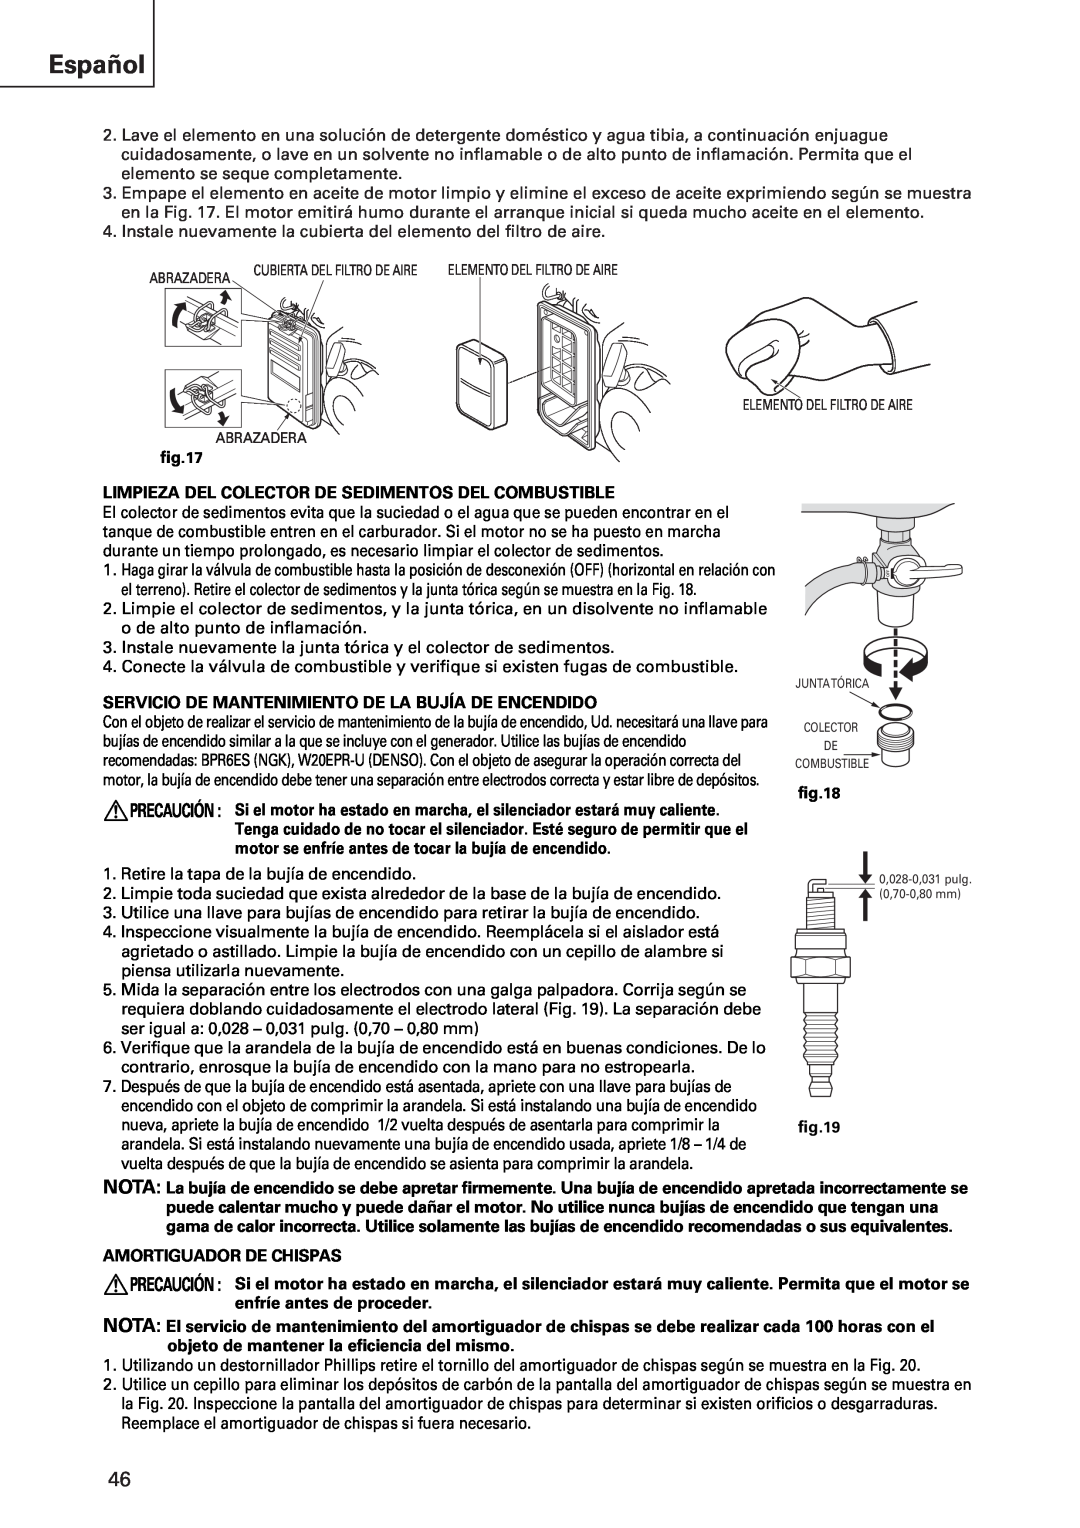 Hitachi E43 instruction manual Español, Limpieza Del Colector De Sedimentos Del Combustible, Amortiguador De Chispas 